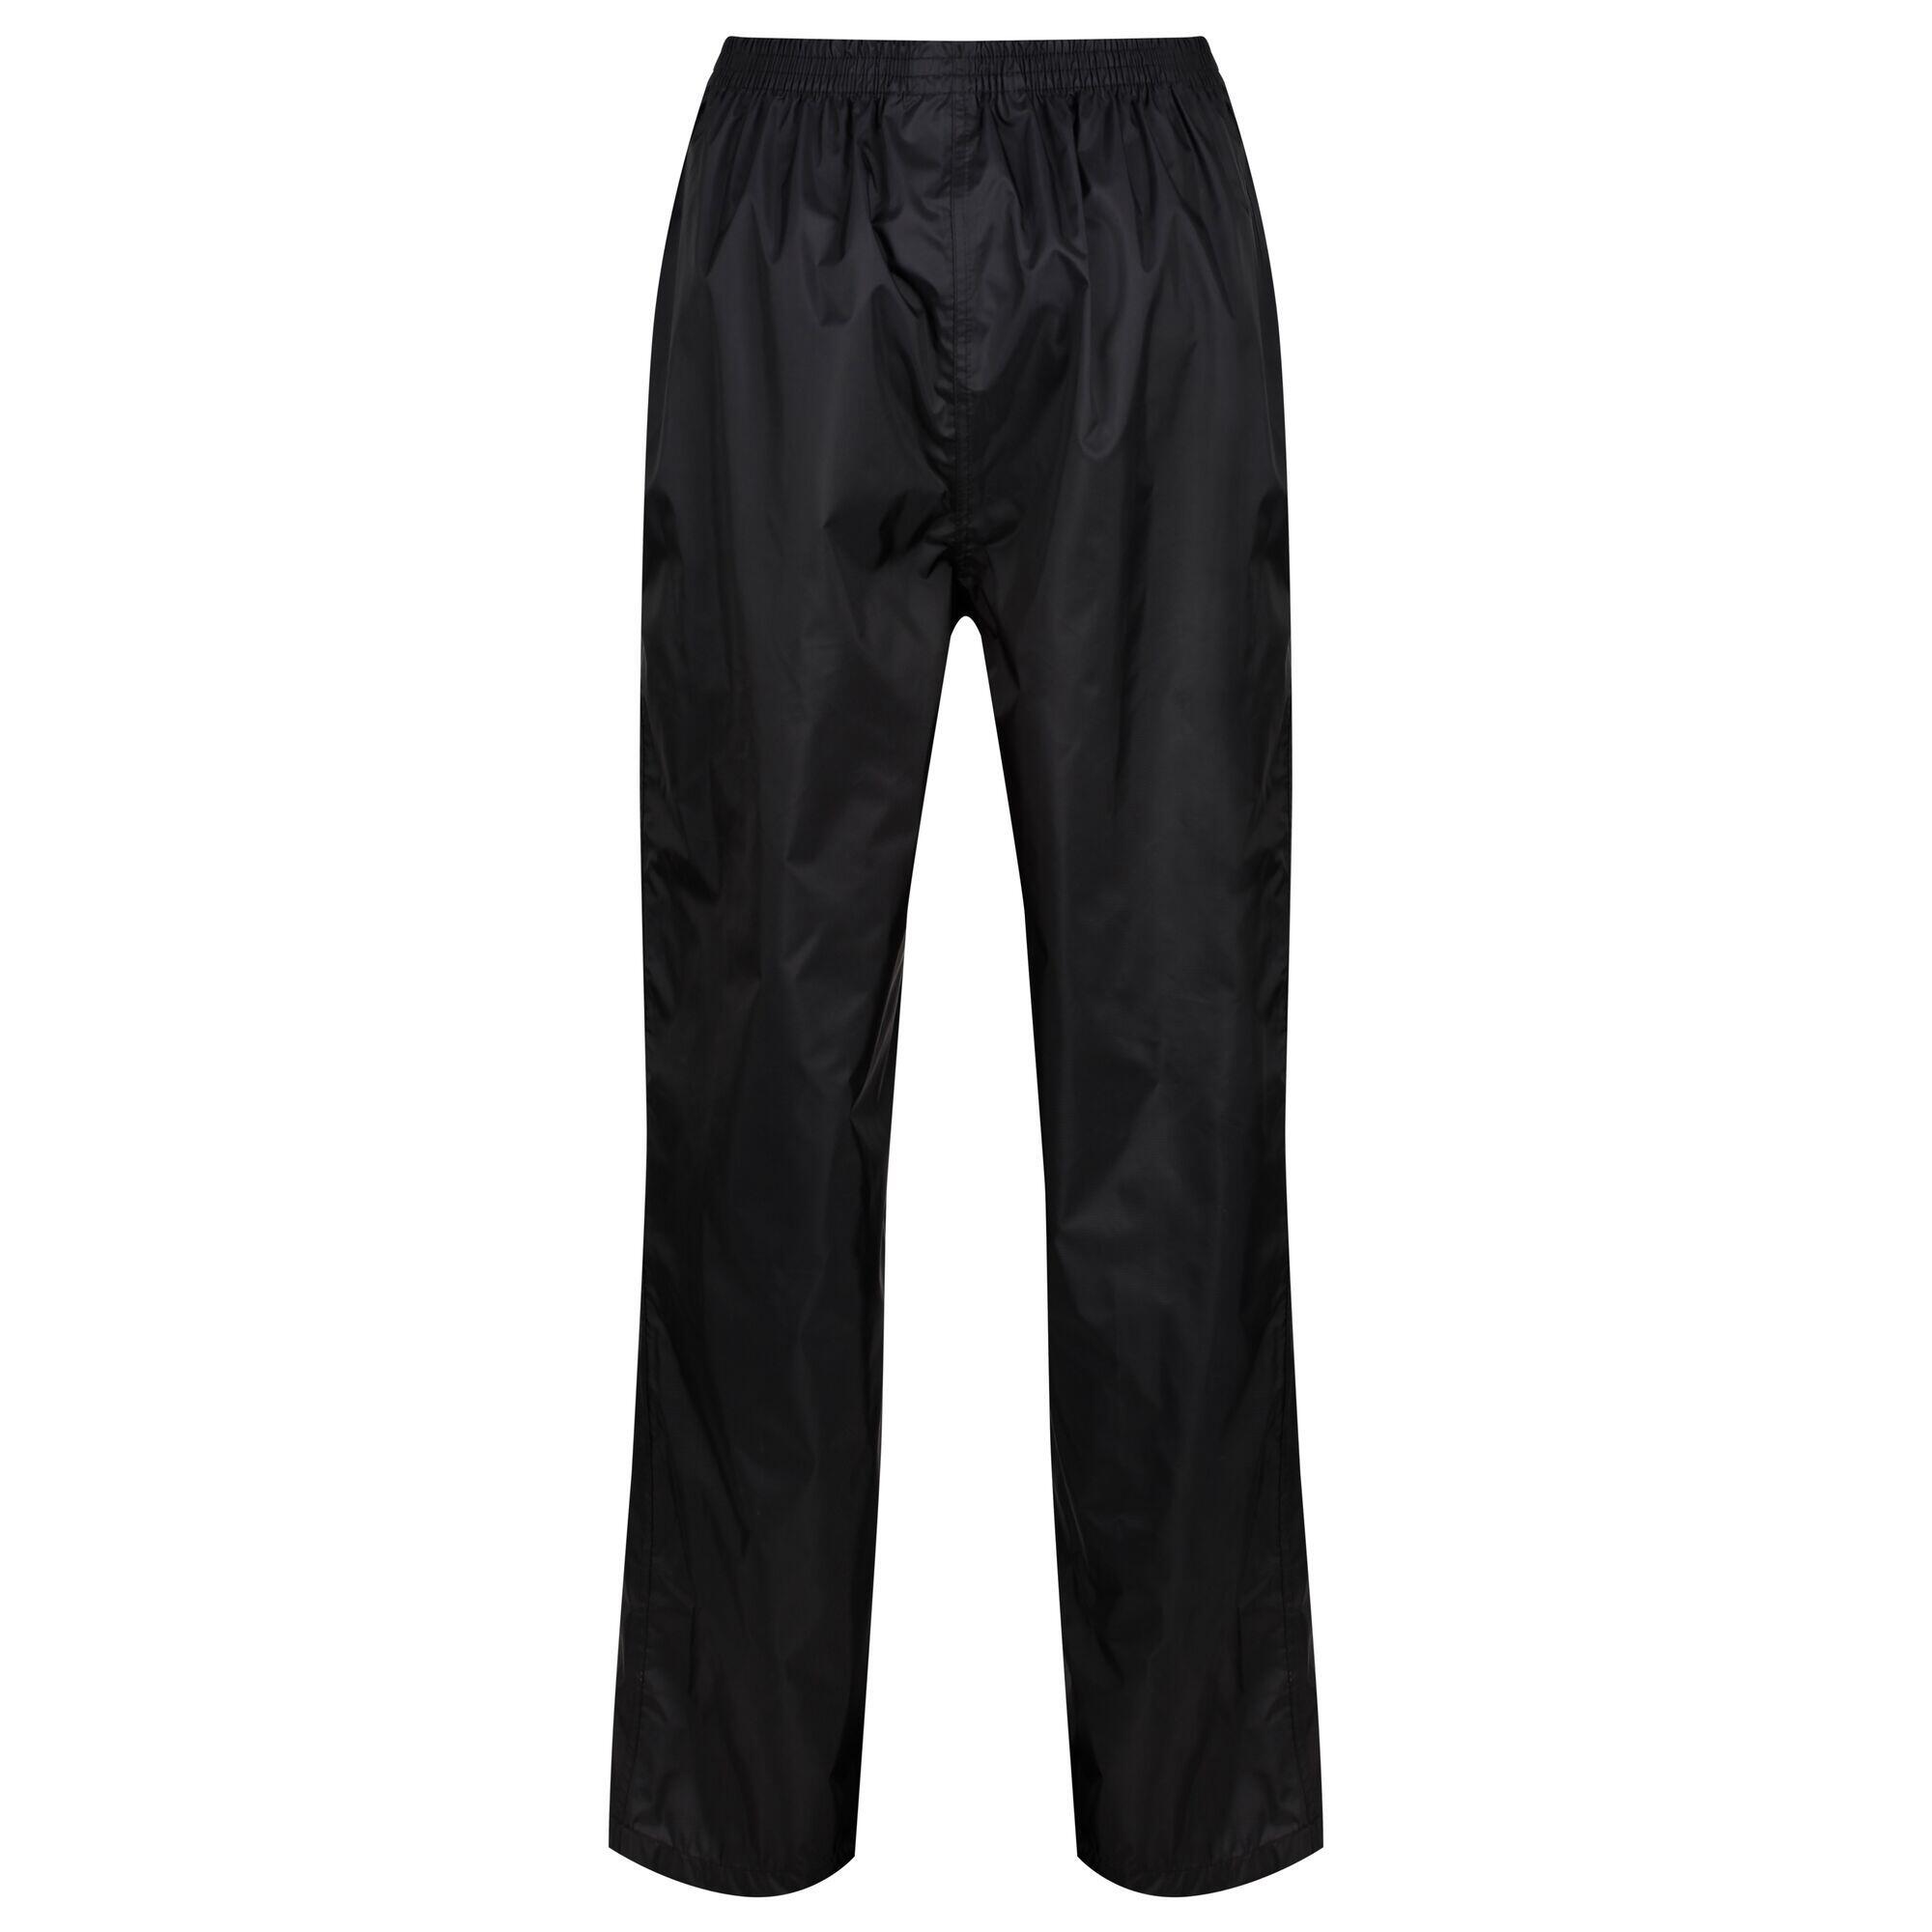 Womens/Ladies Packaway Rain Trousers (Black) 2/4